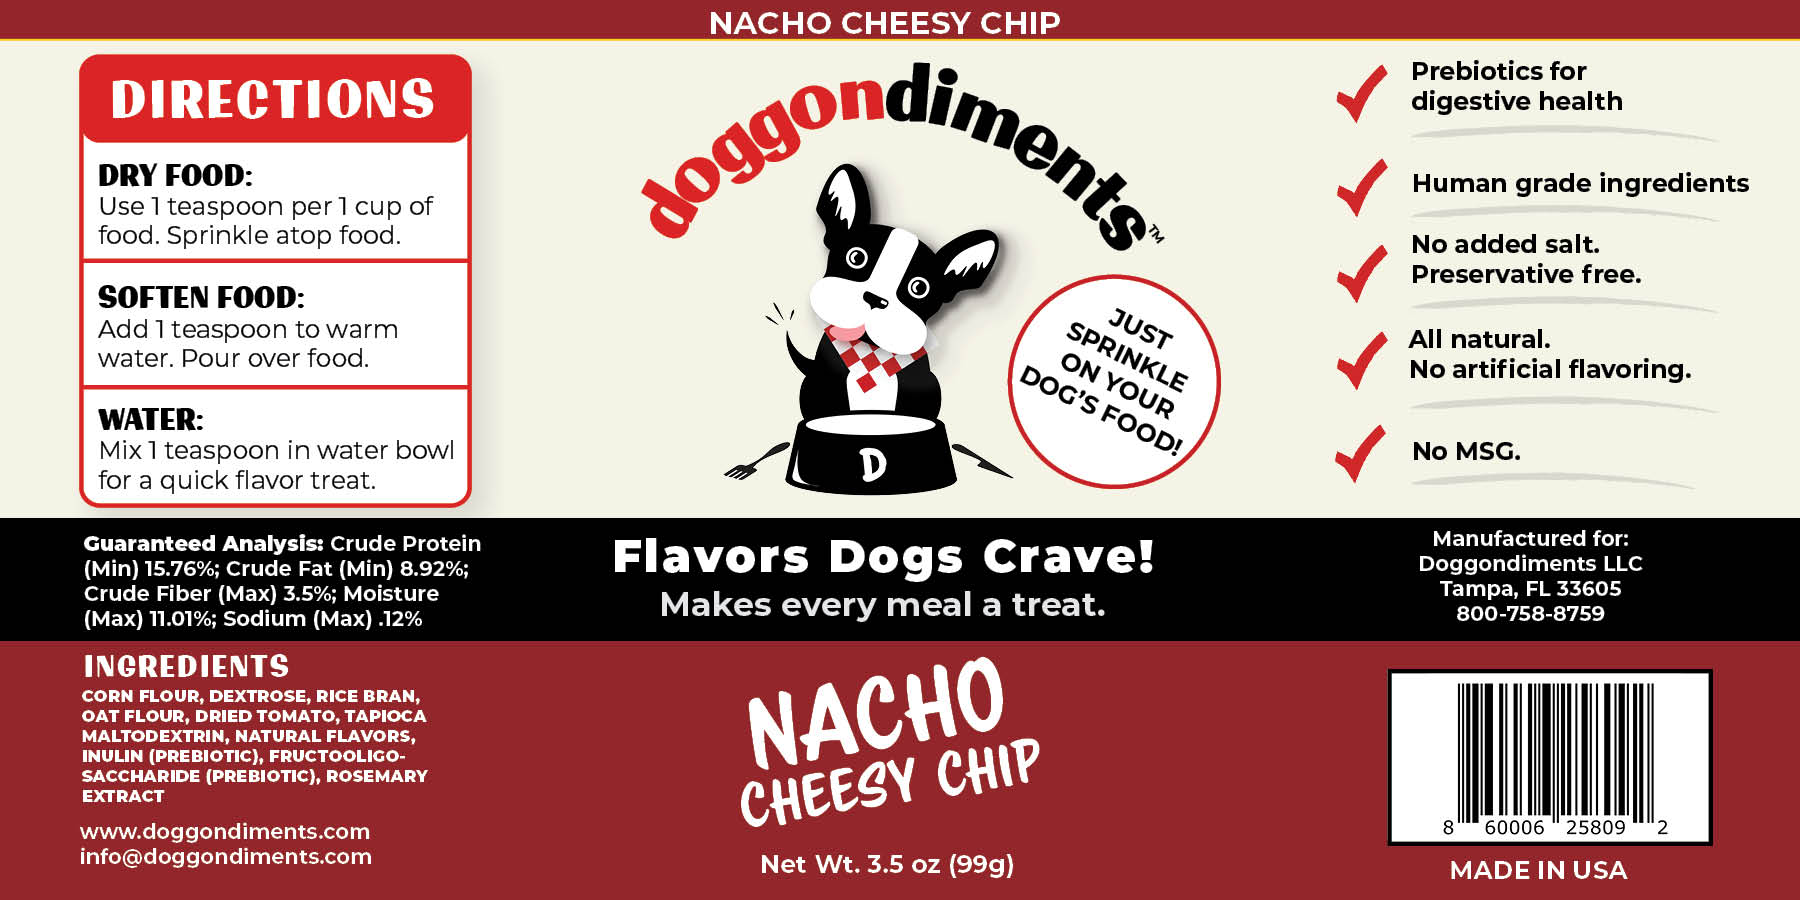 NEW! Nacho Cheesy Chip